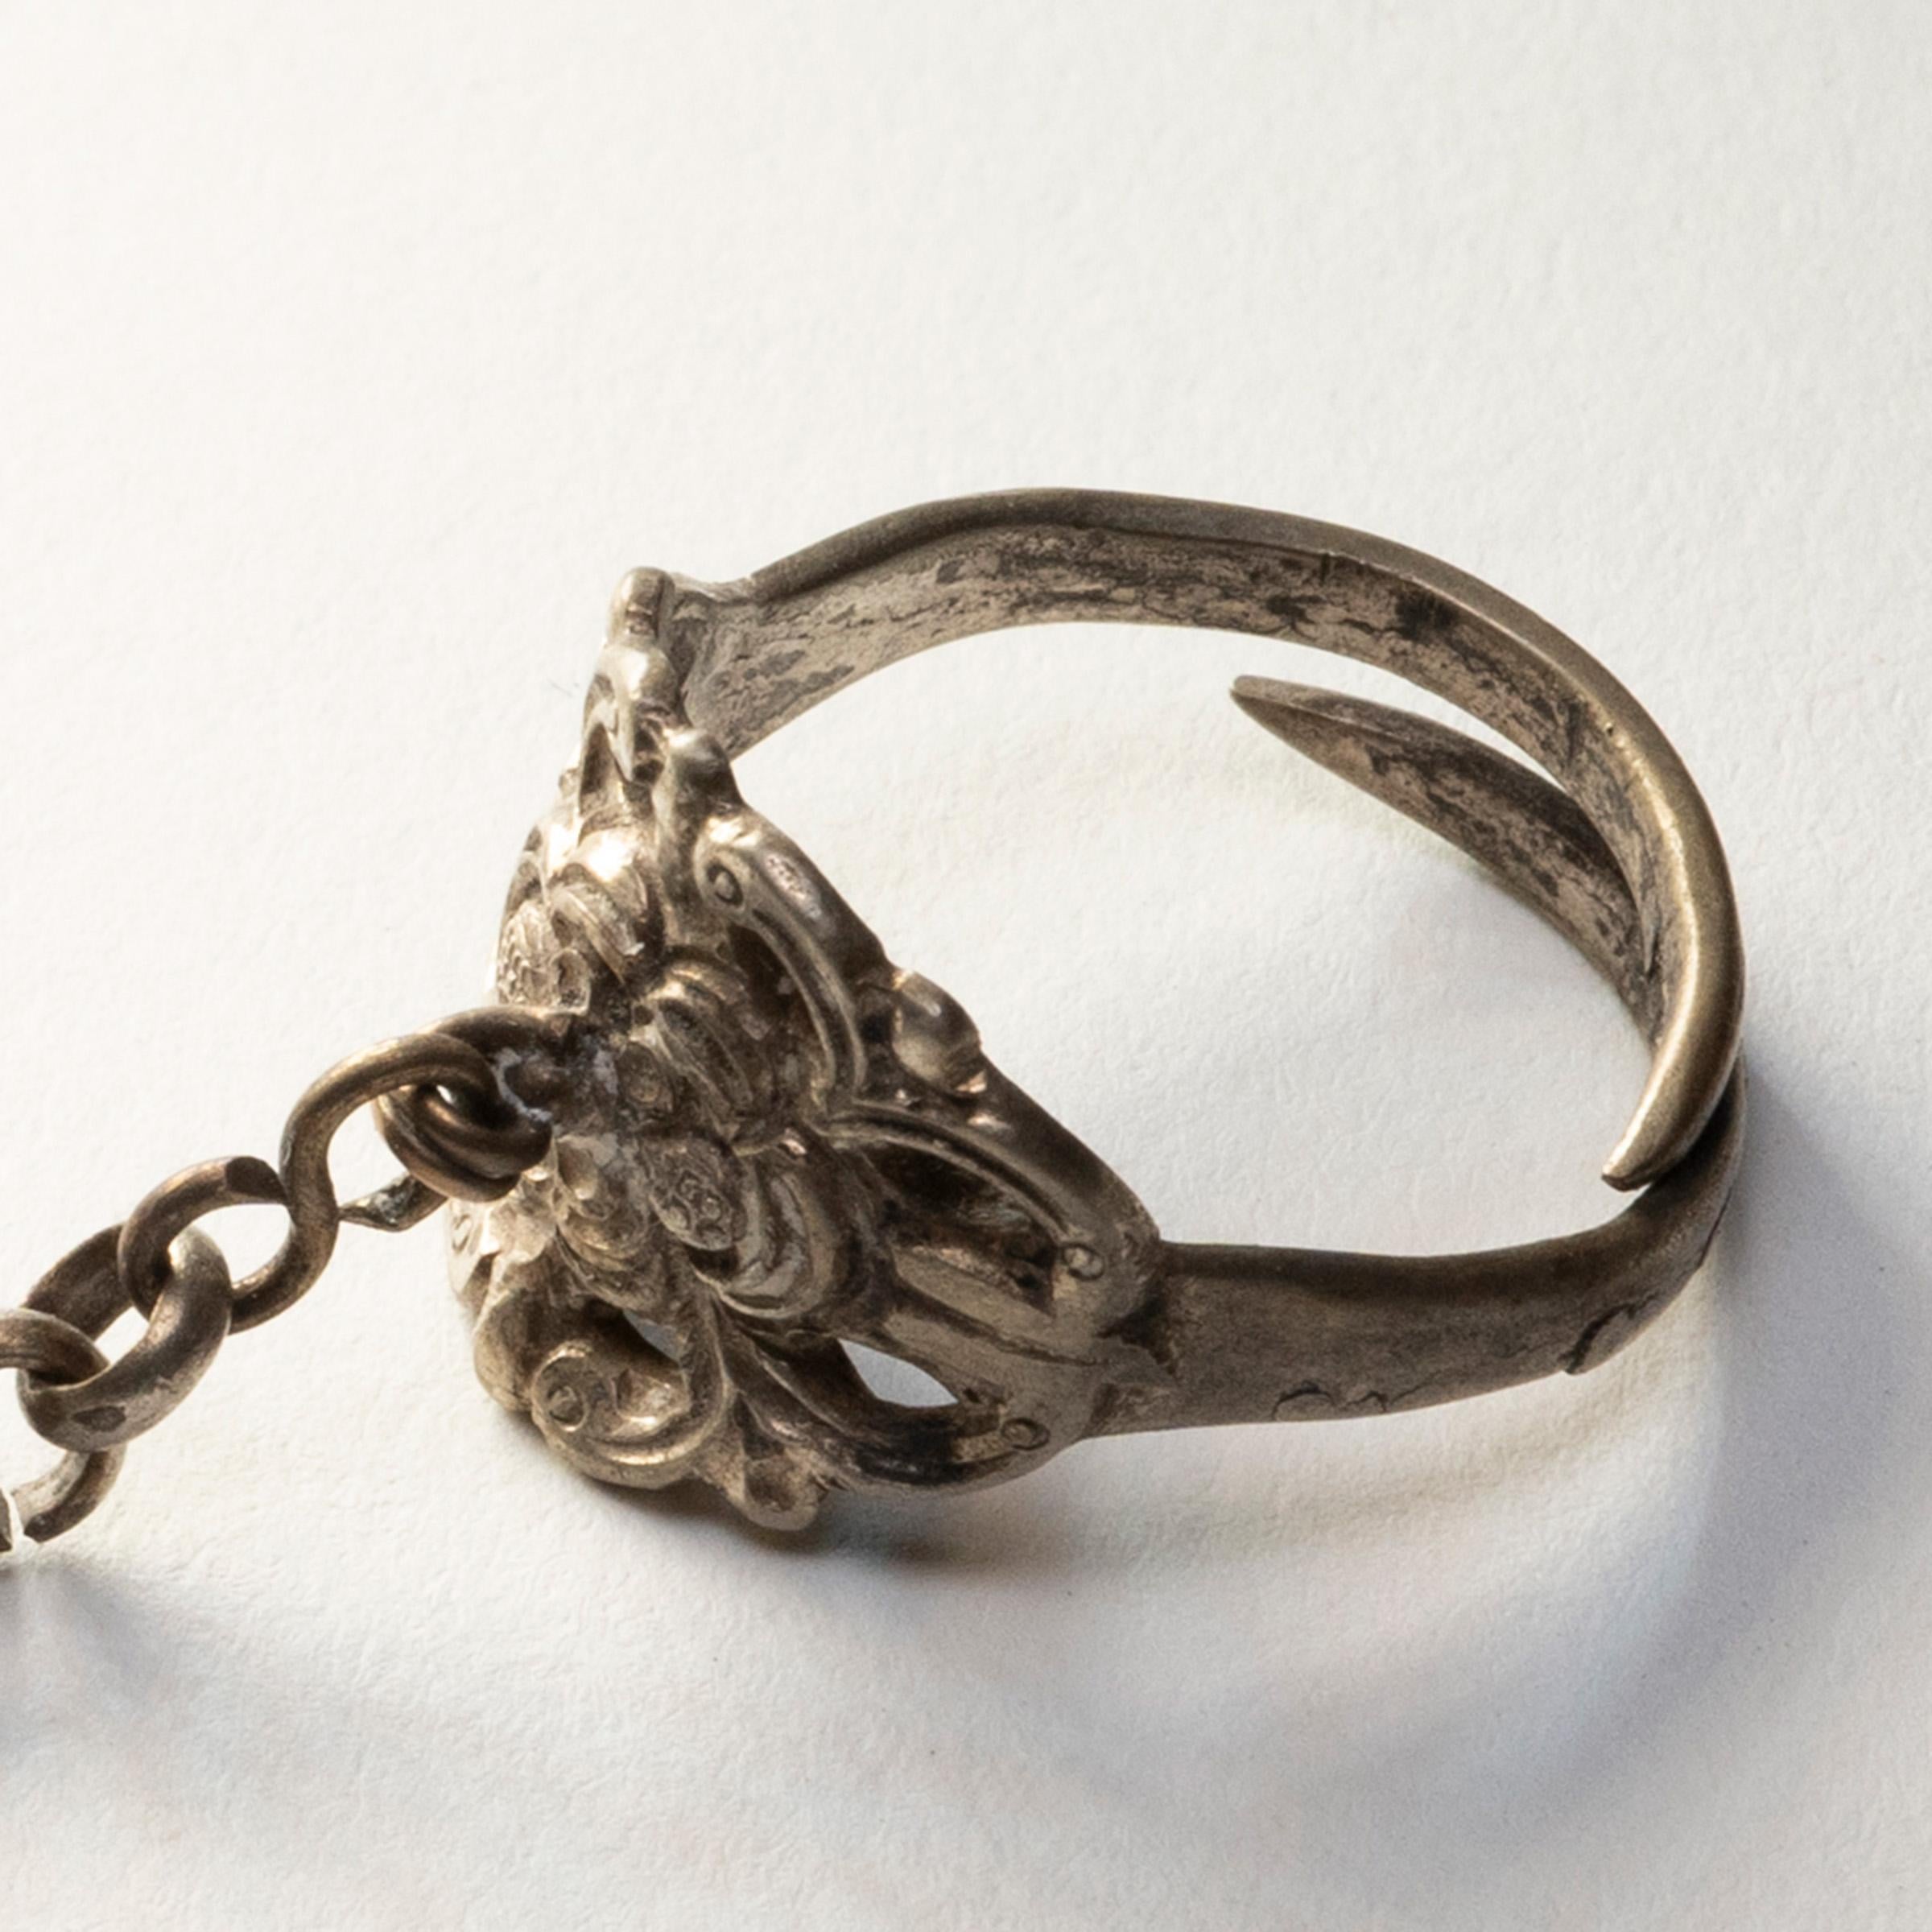 Dieser silberne Charme-Ring aus dem späten 19. Jahrhundert sollte seine Trägerin vor Unglück und bösen Geistern schützen. Der Ring ist mit einer reliefierten Blumenblüte verziert, die von Blättern und Ranken umgeben ist. Von der Mitte der Blume